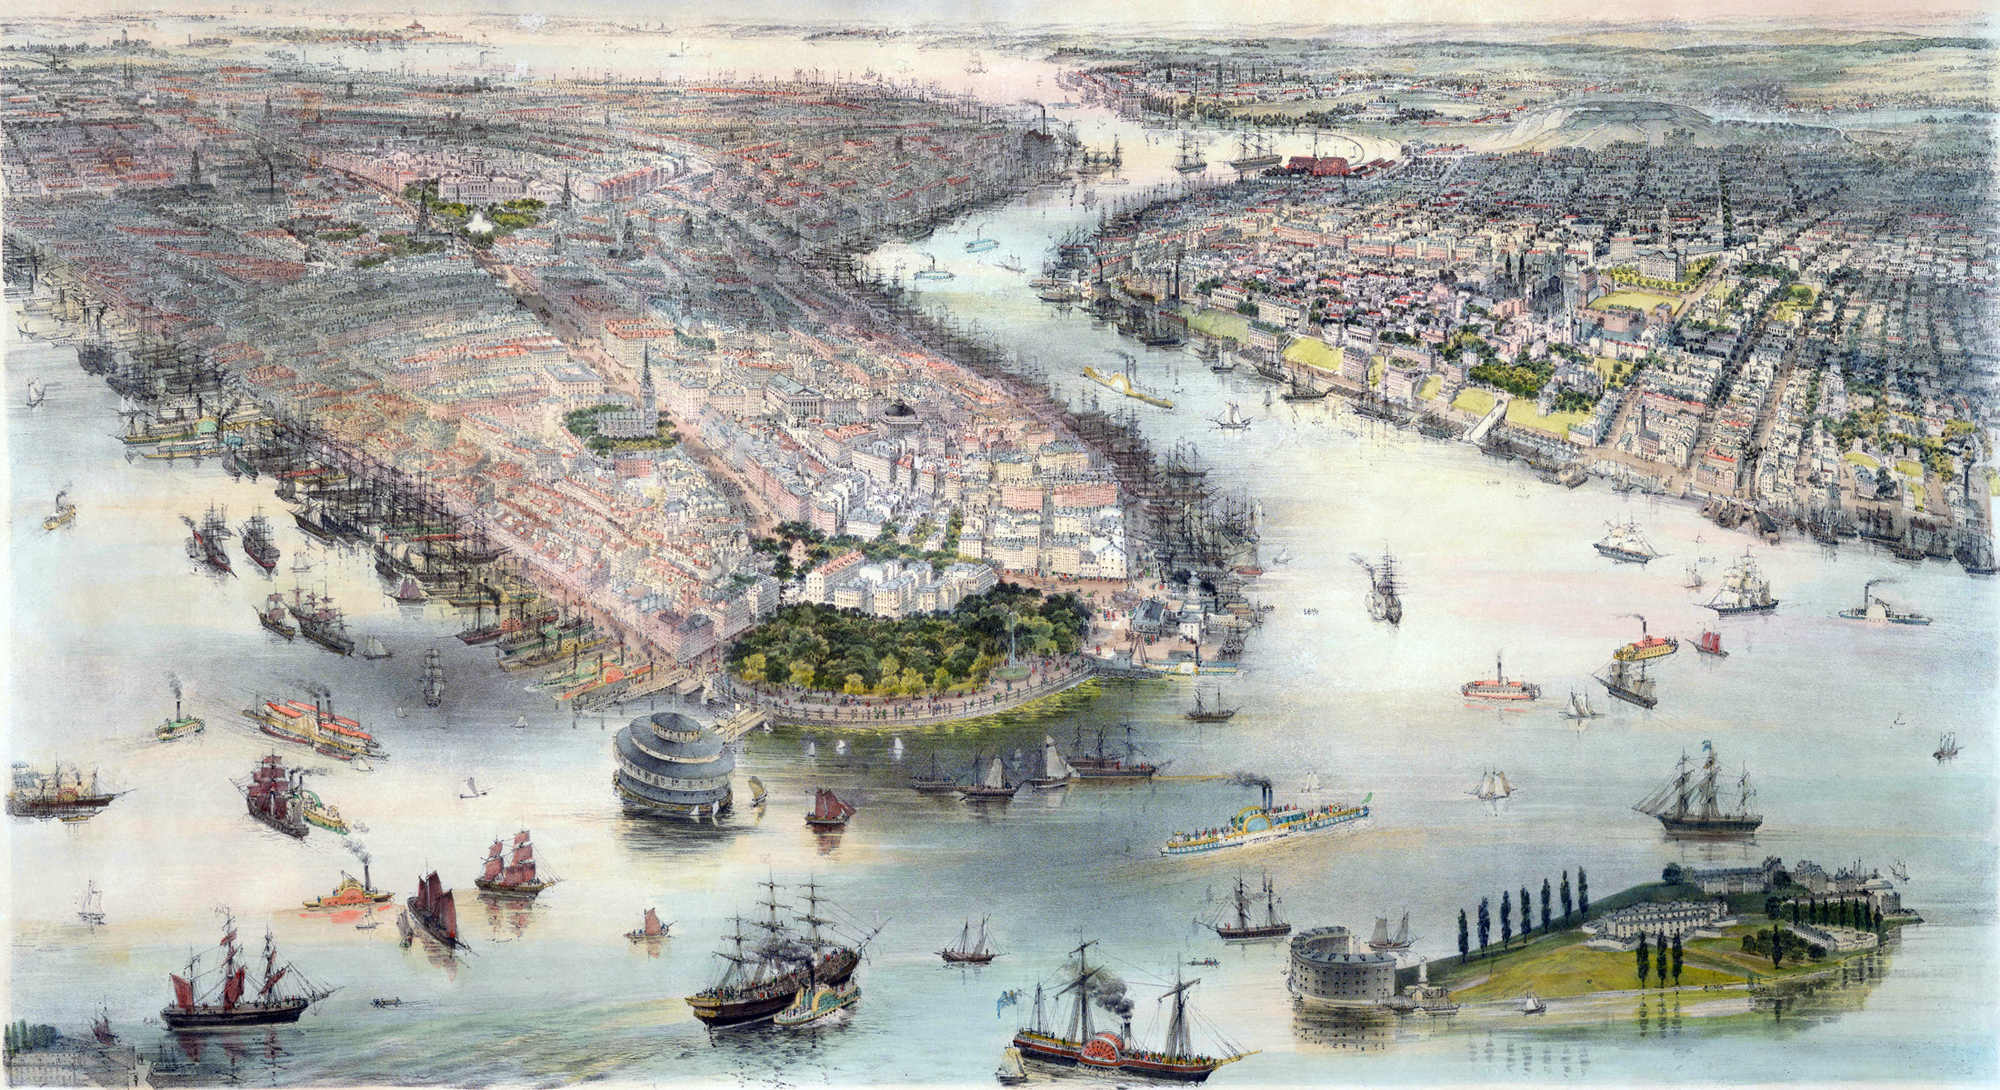 Brooklyn in 19th century | Khám phá Mỹ